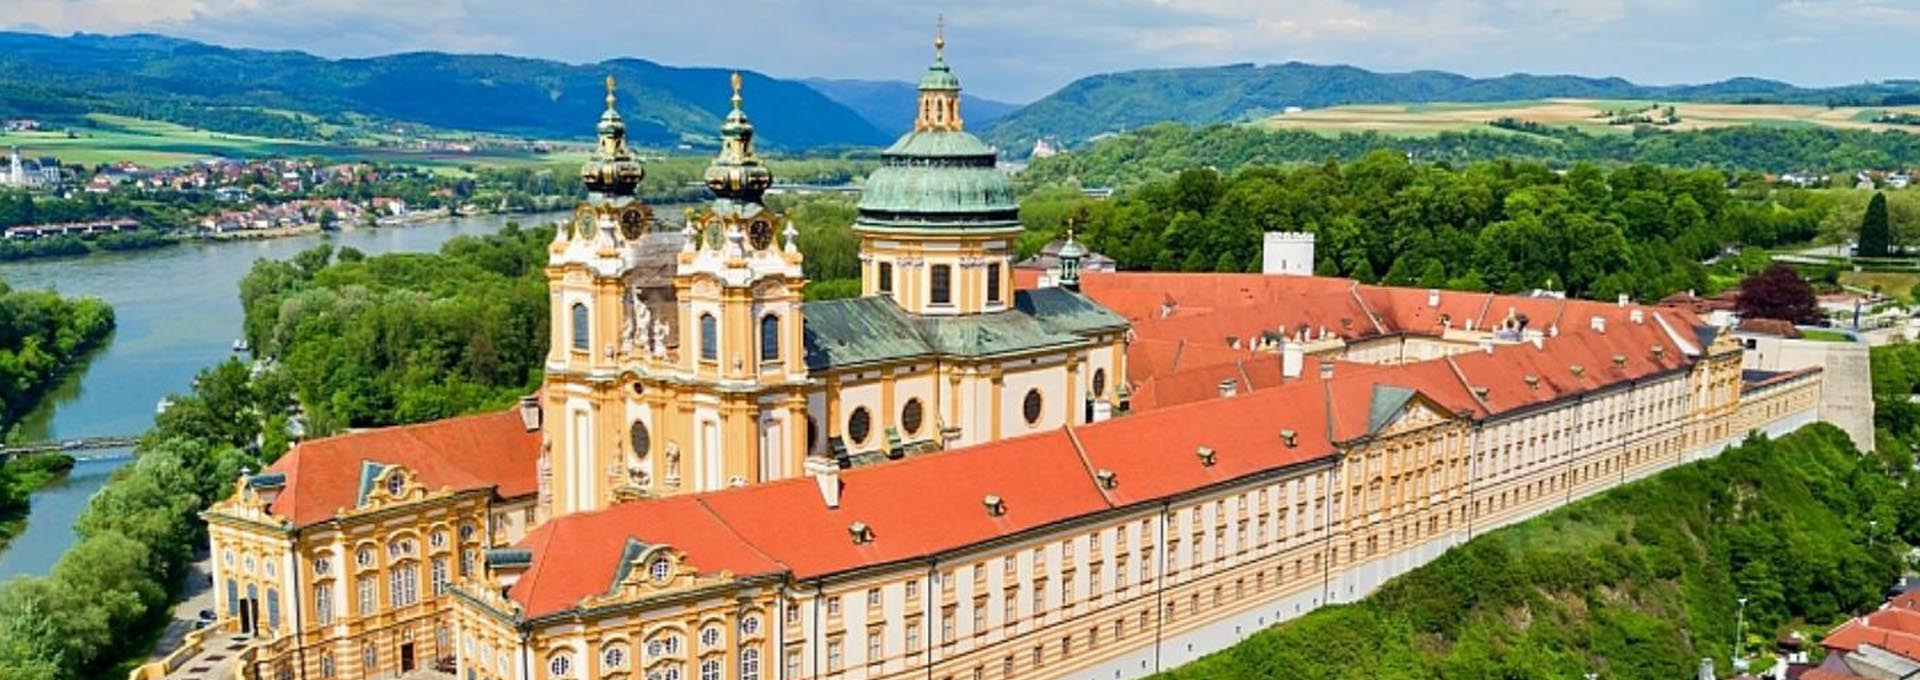 Abadía de Melk Austria